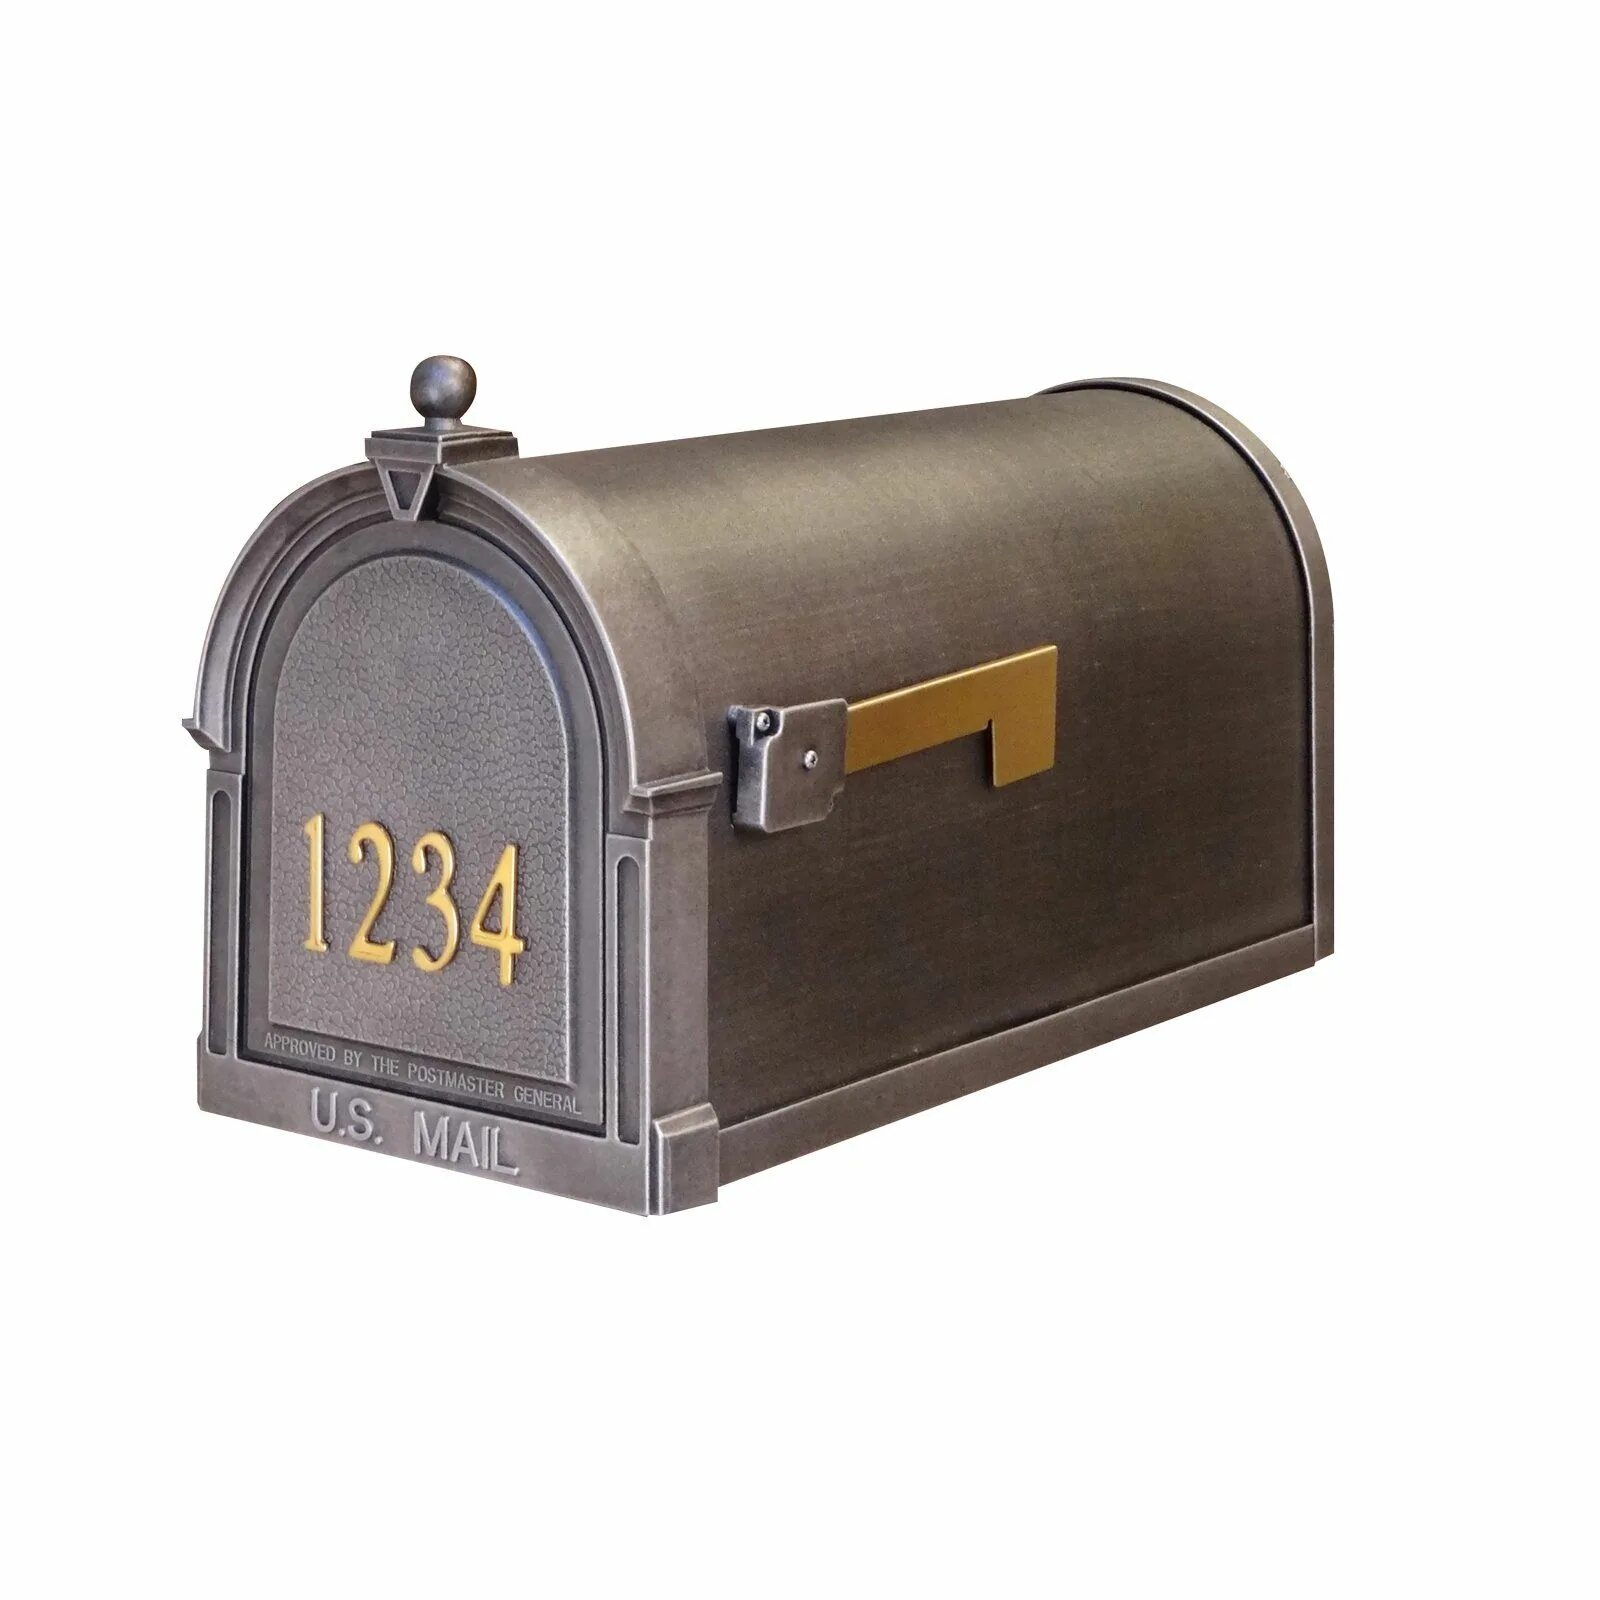 Mailbox hosting. Почтовый ящик. Американский почтовый ящик. Почтовый ящик в американском стиле. Почтовый ящик американского типа.